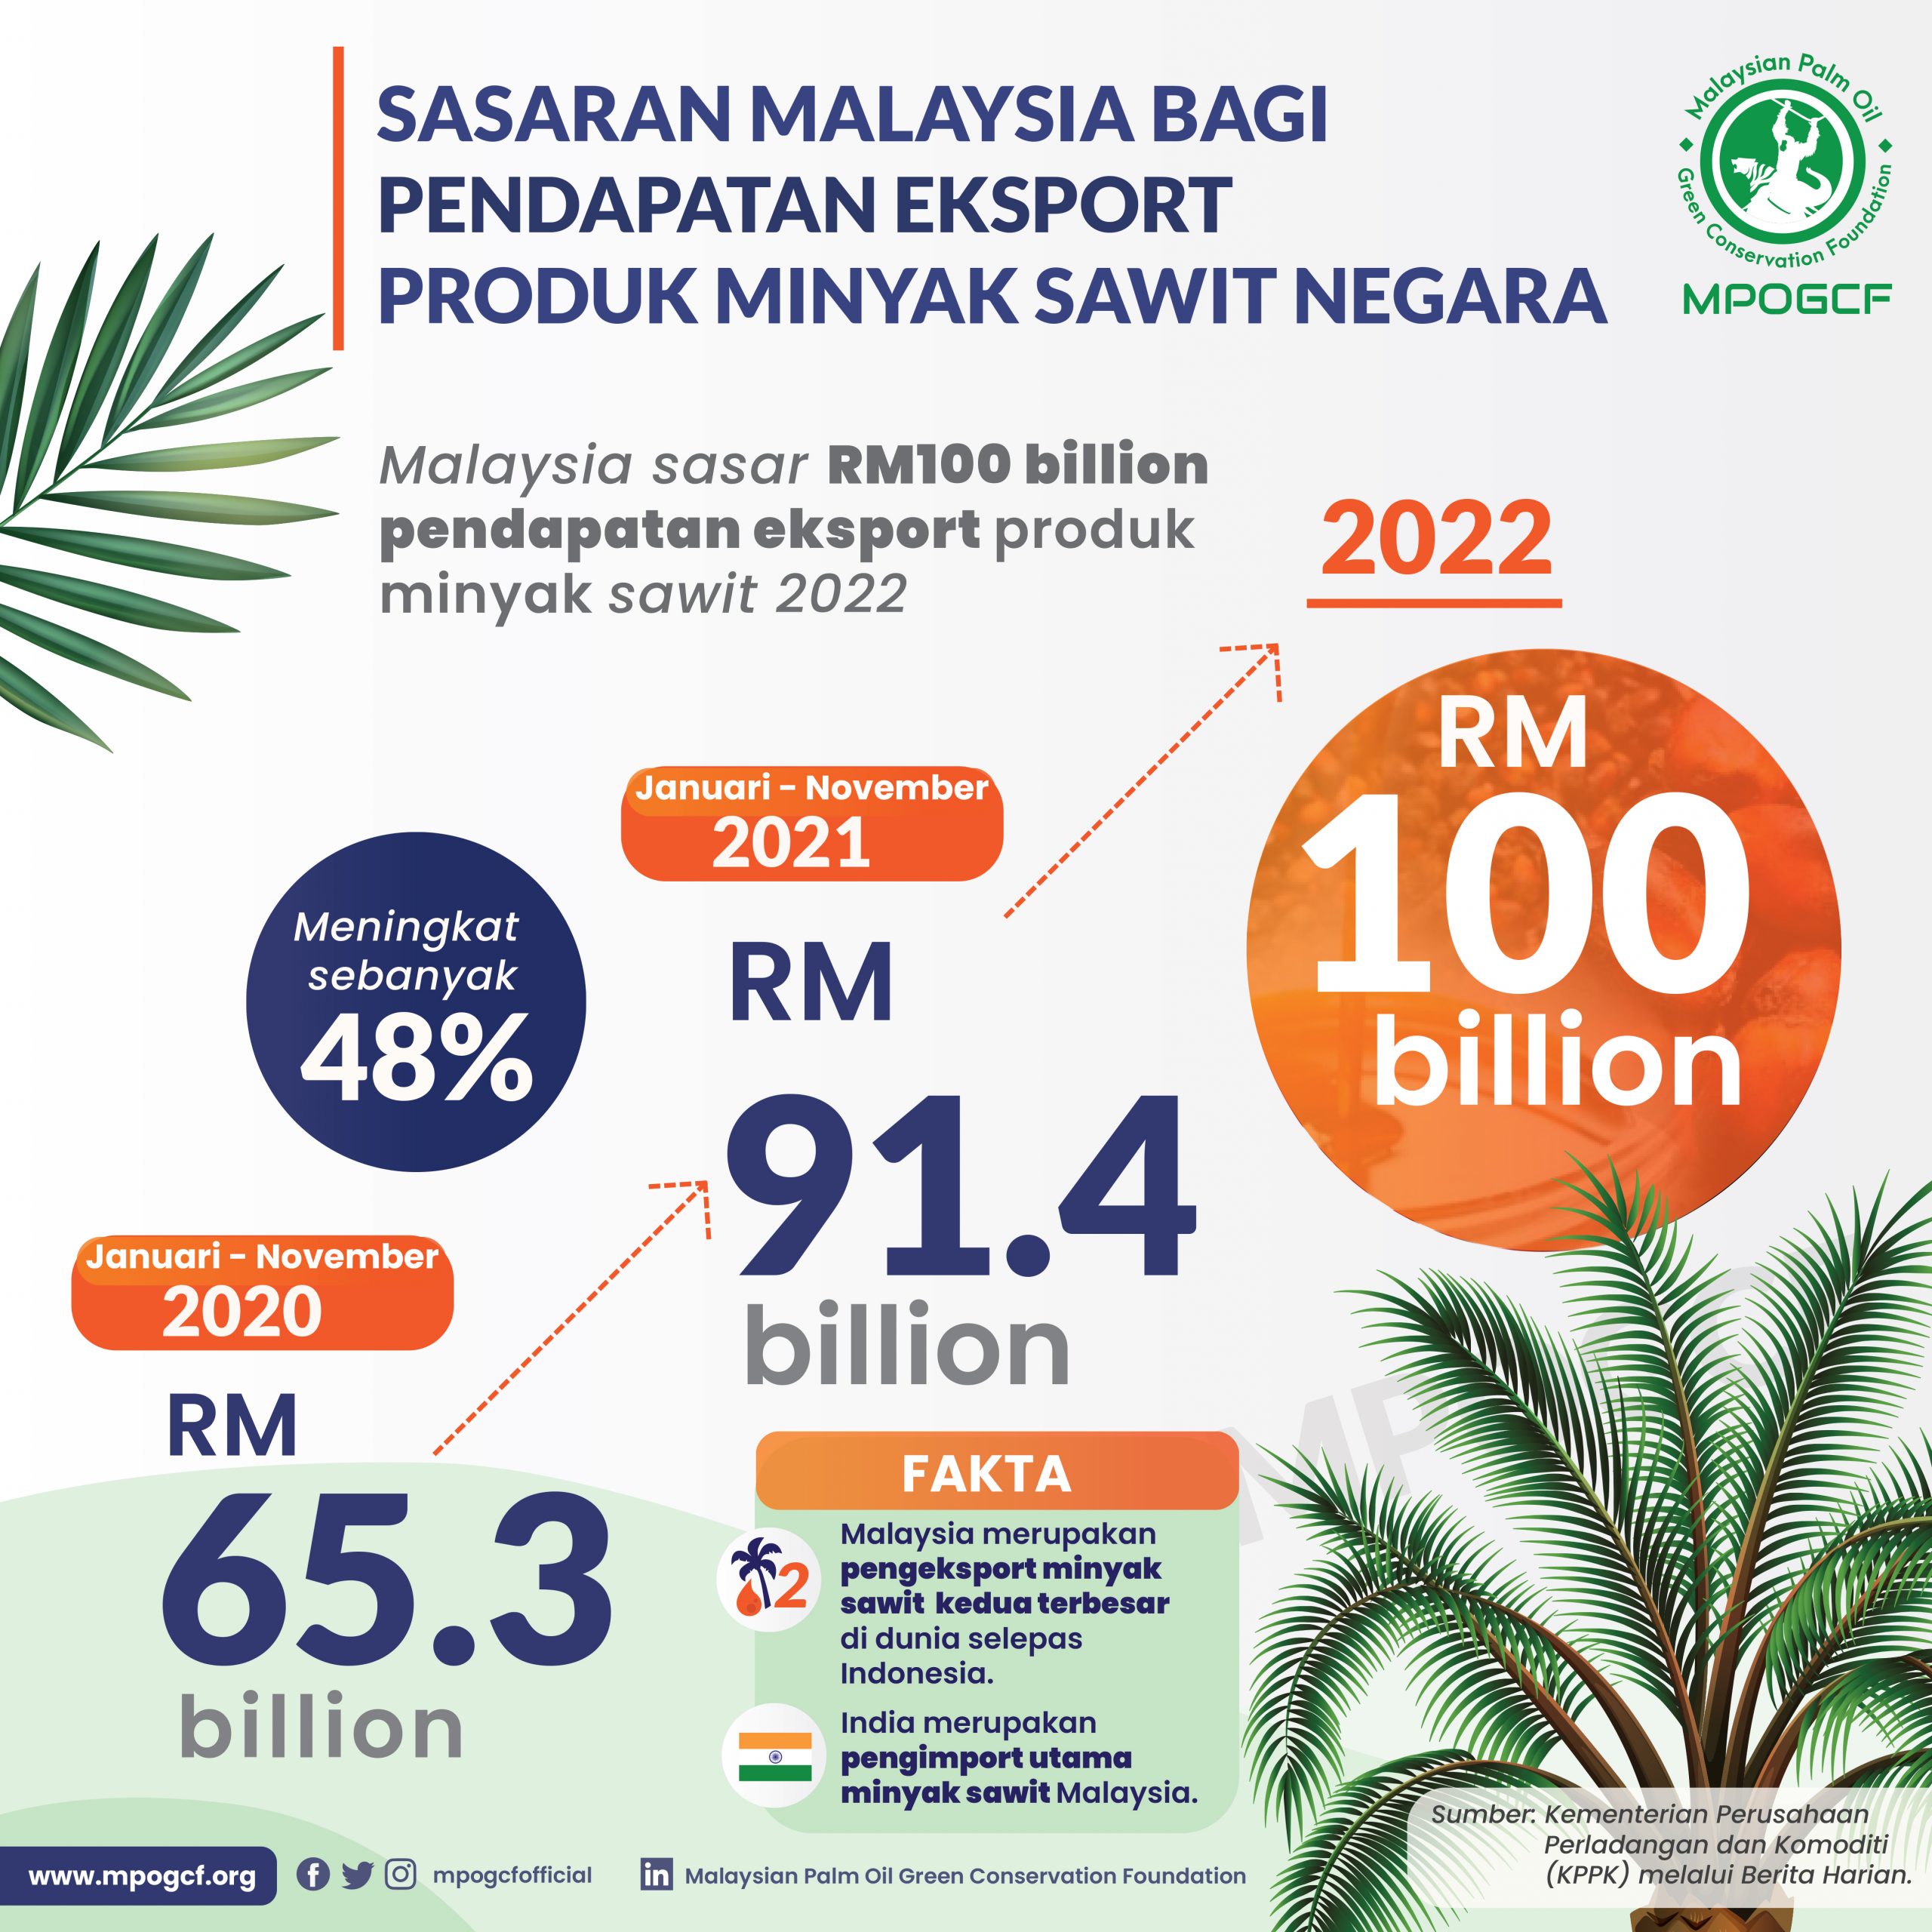 Sasaran Malaysia Bagi Pendapatan Eksport Produk Minyak Sawit Negara